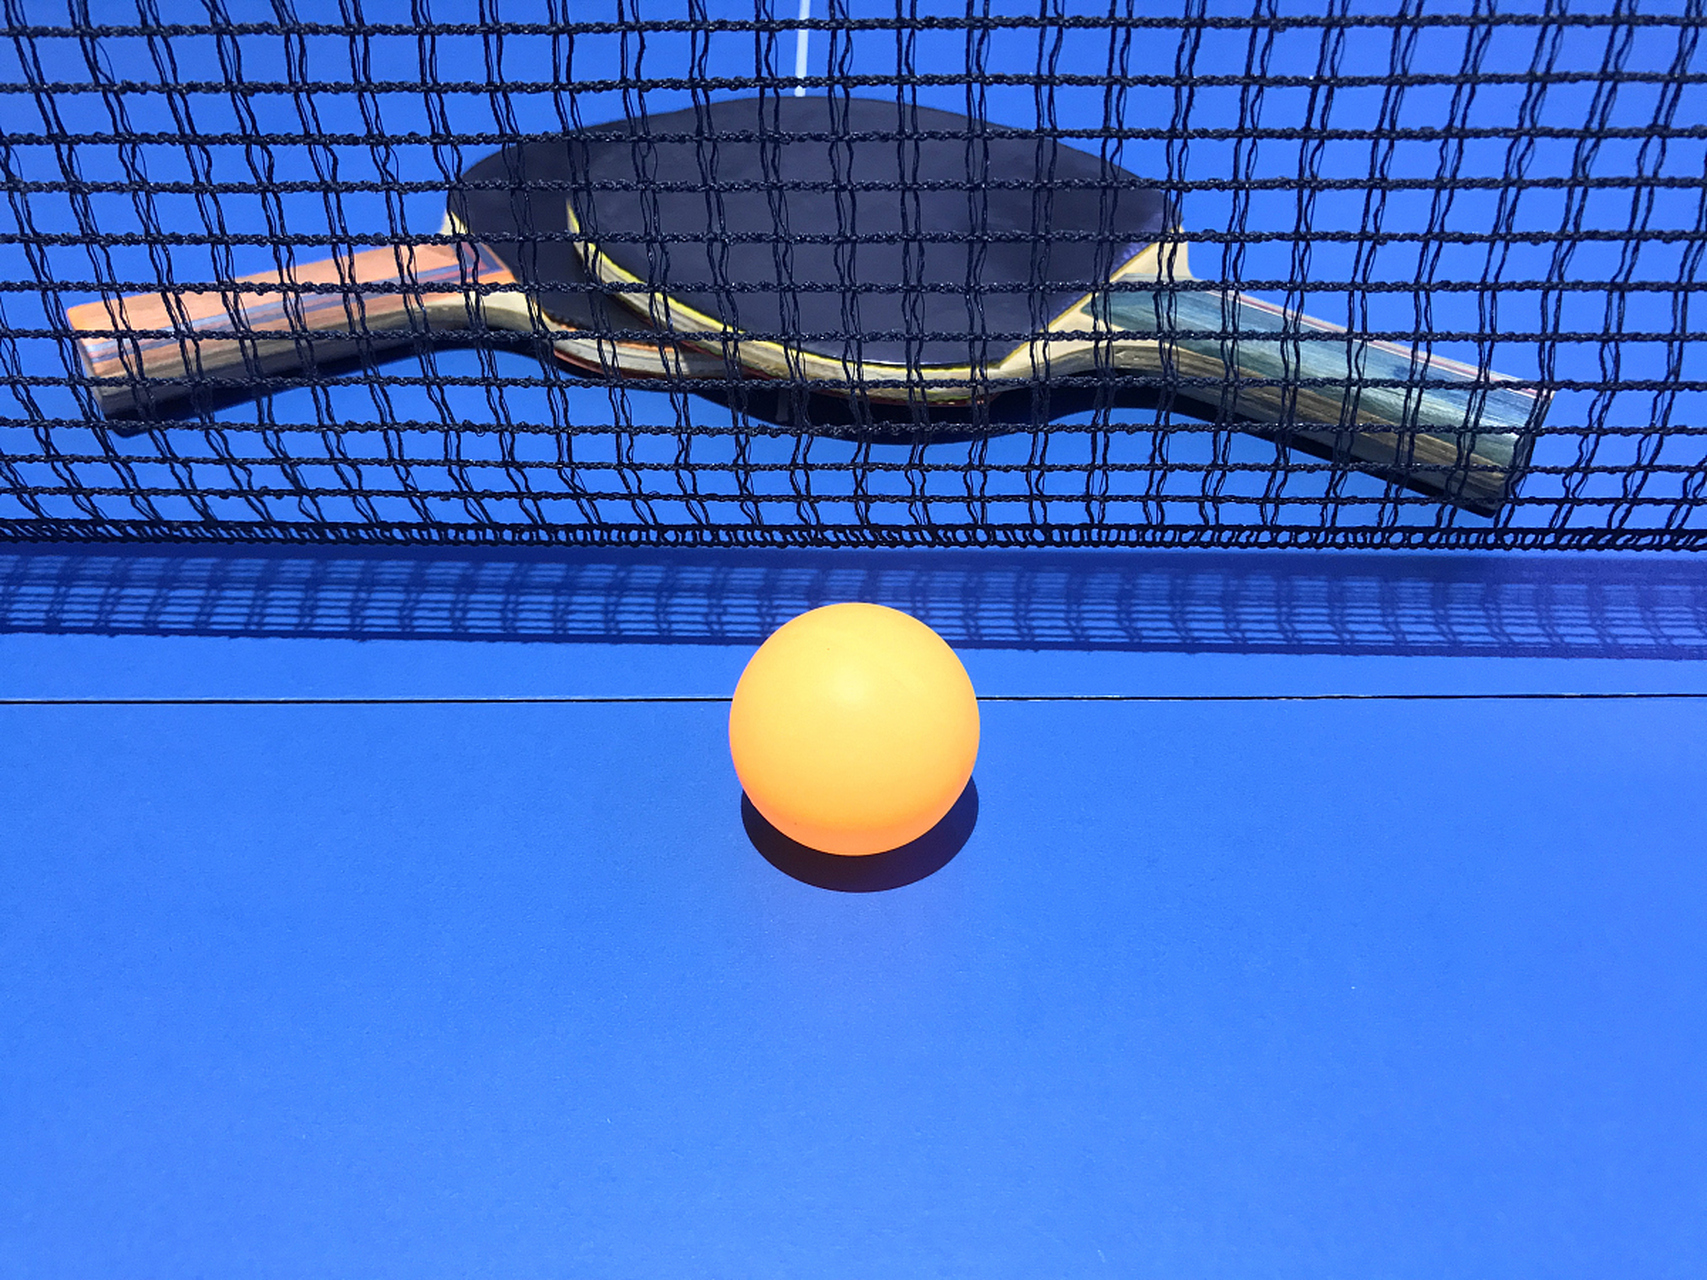 [原文:乒乓球擦网球怎么算?